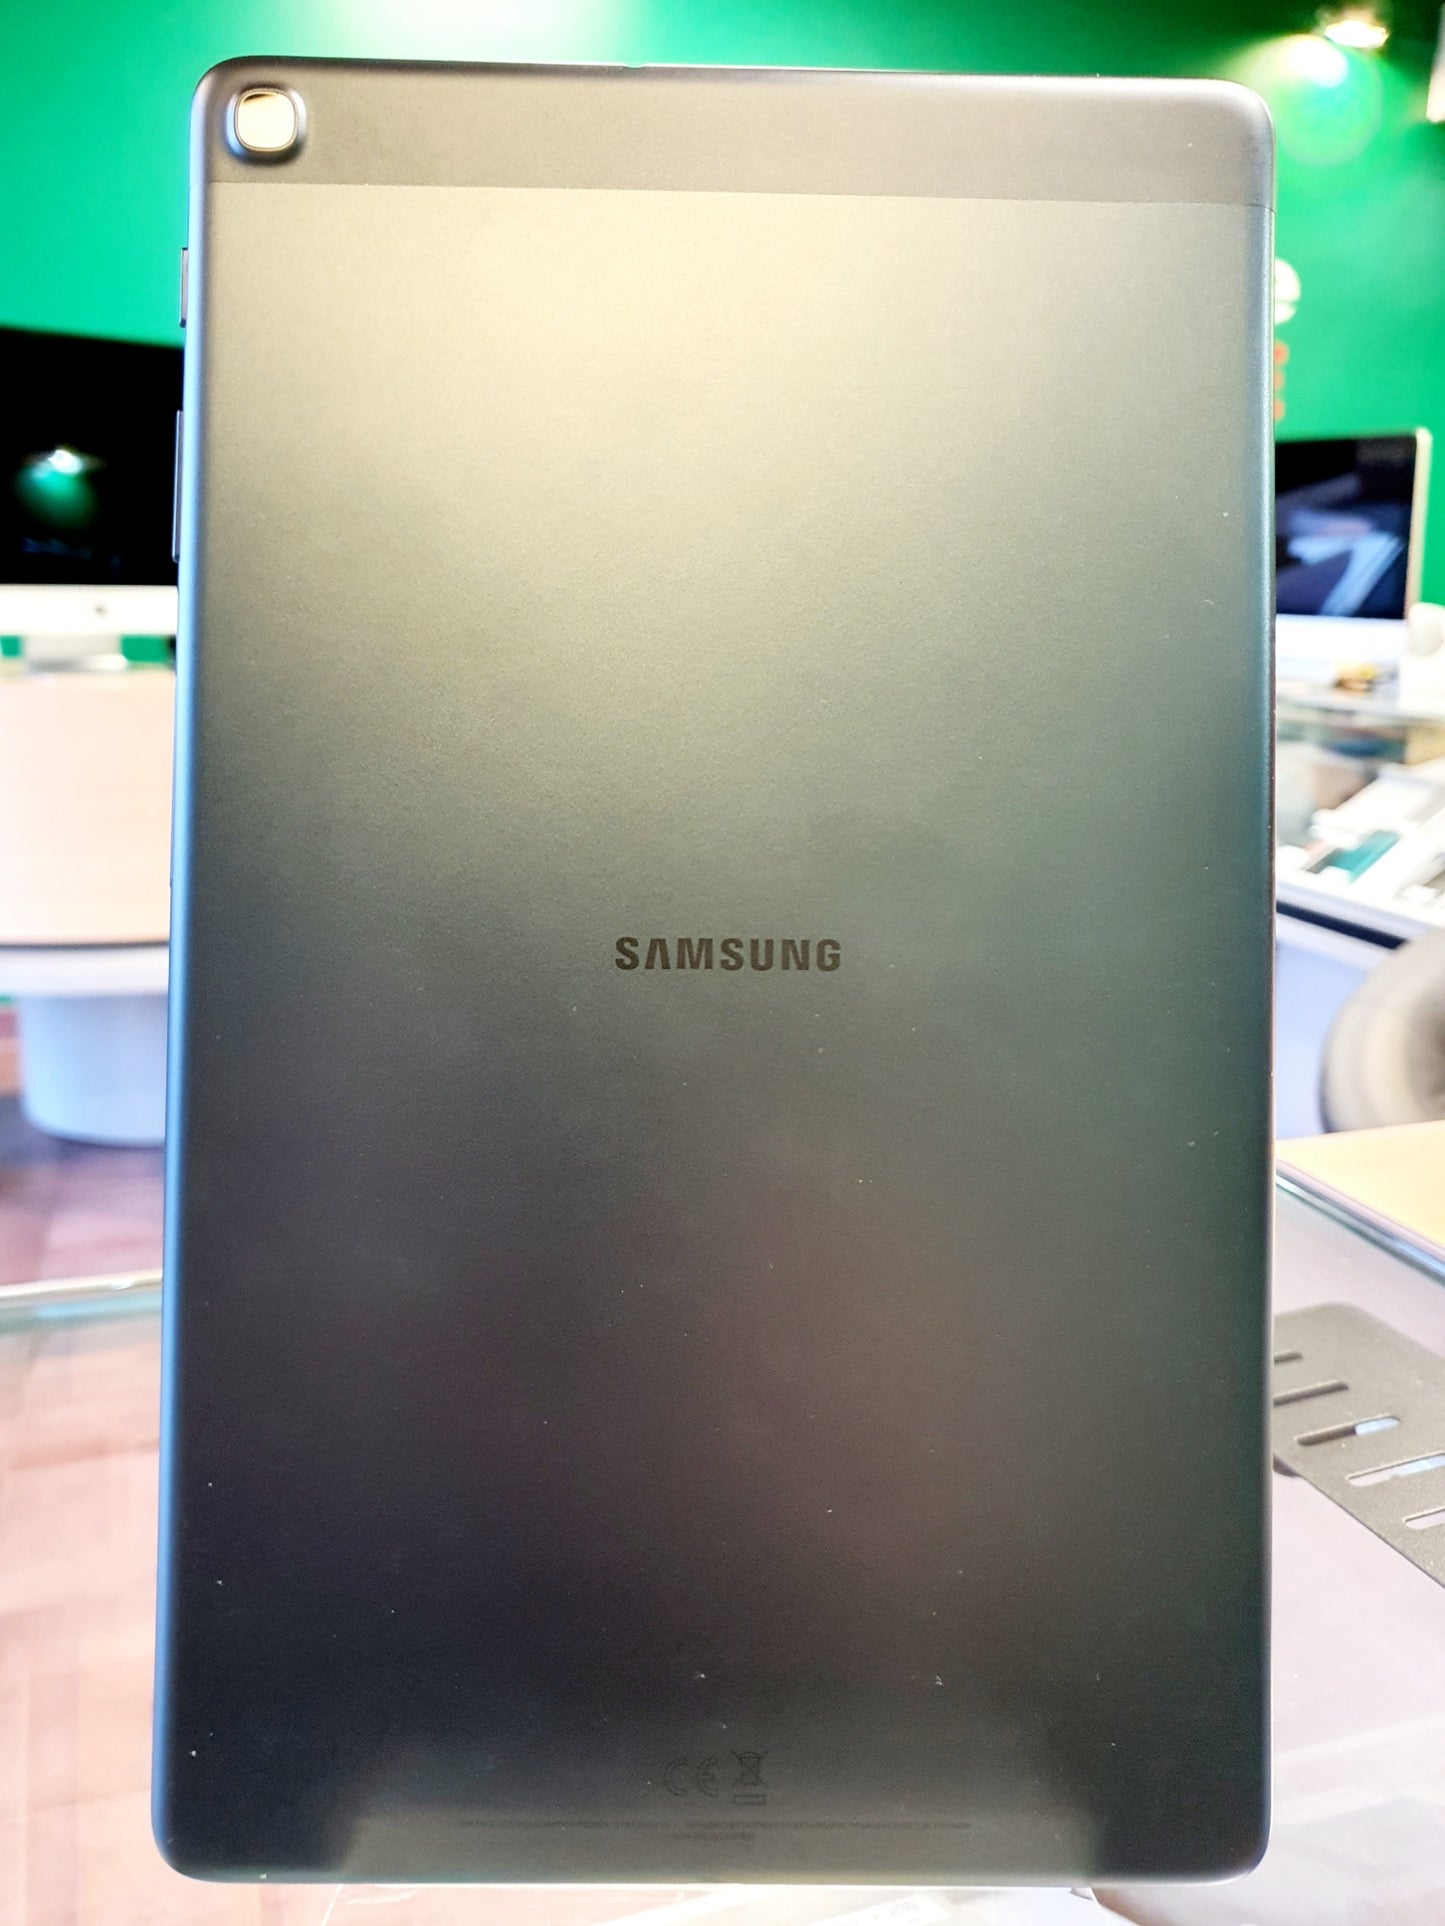 Samsung Galaxy Tab A - wifi - 32gb - nero